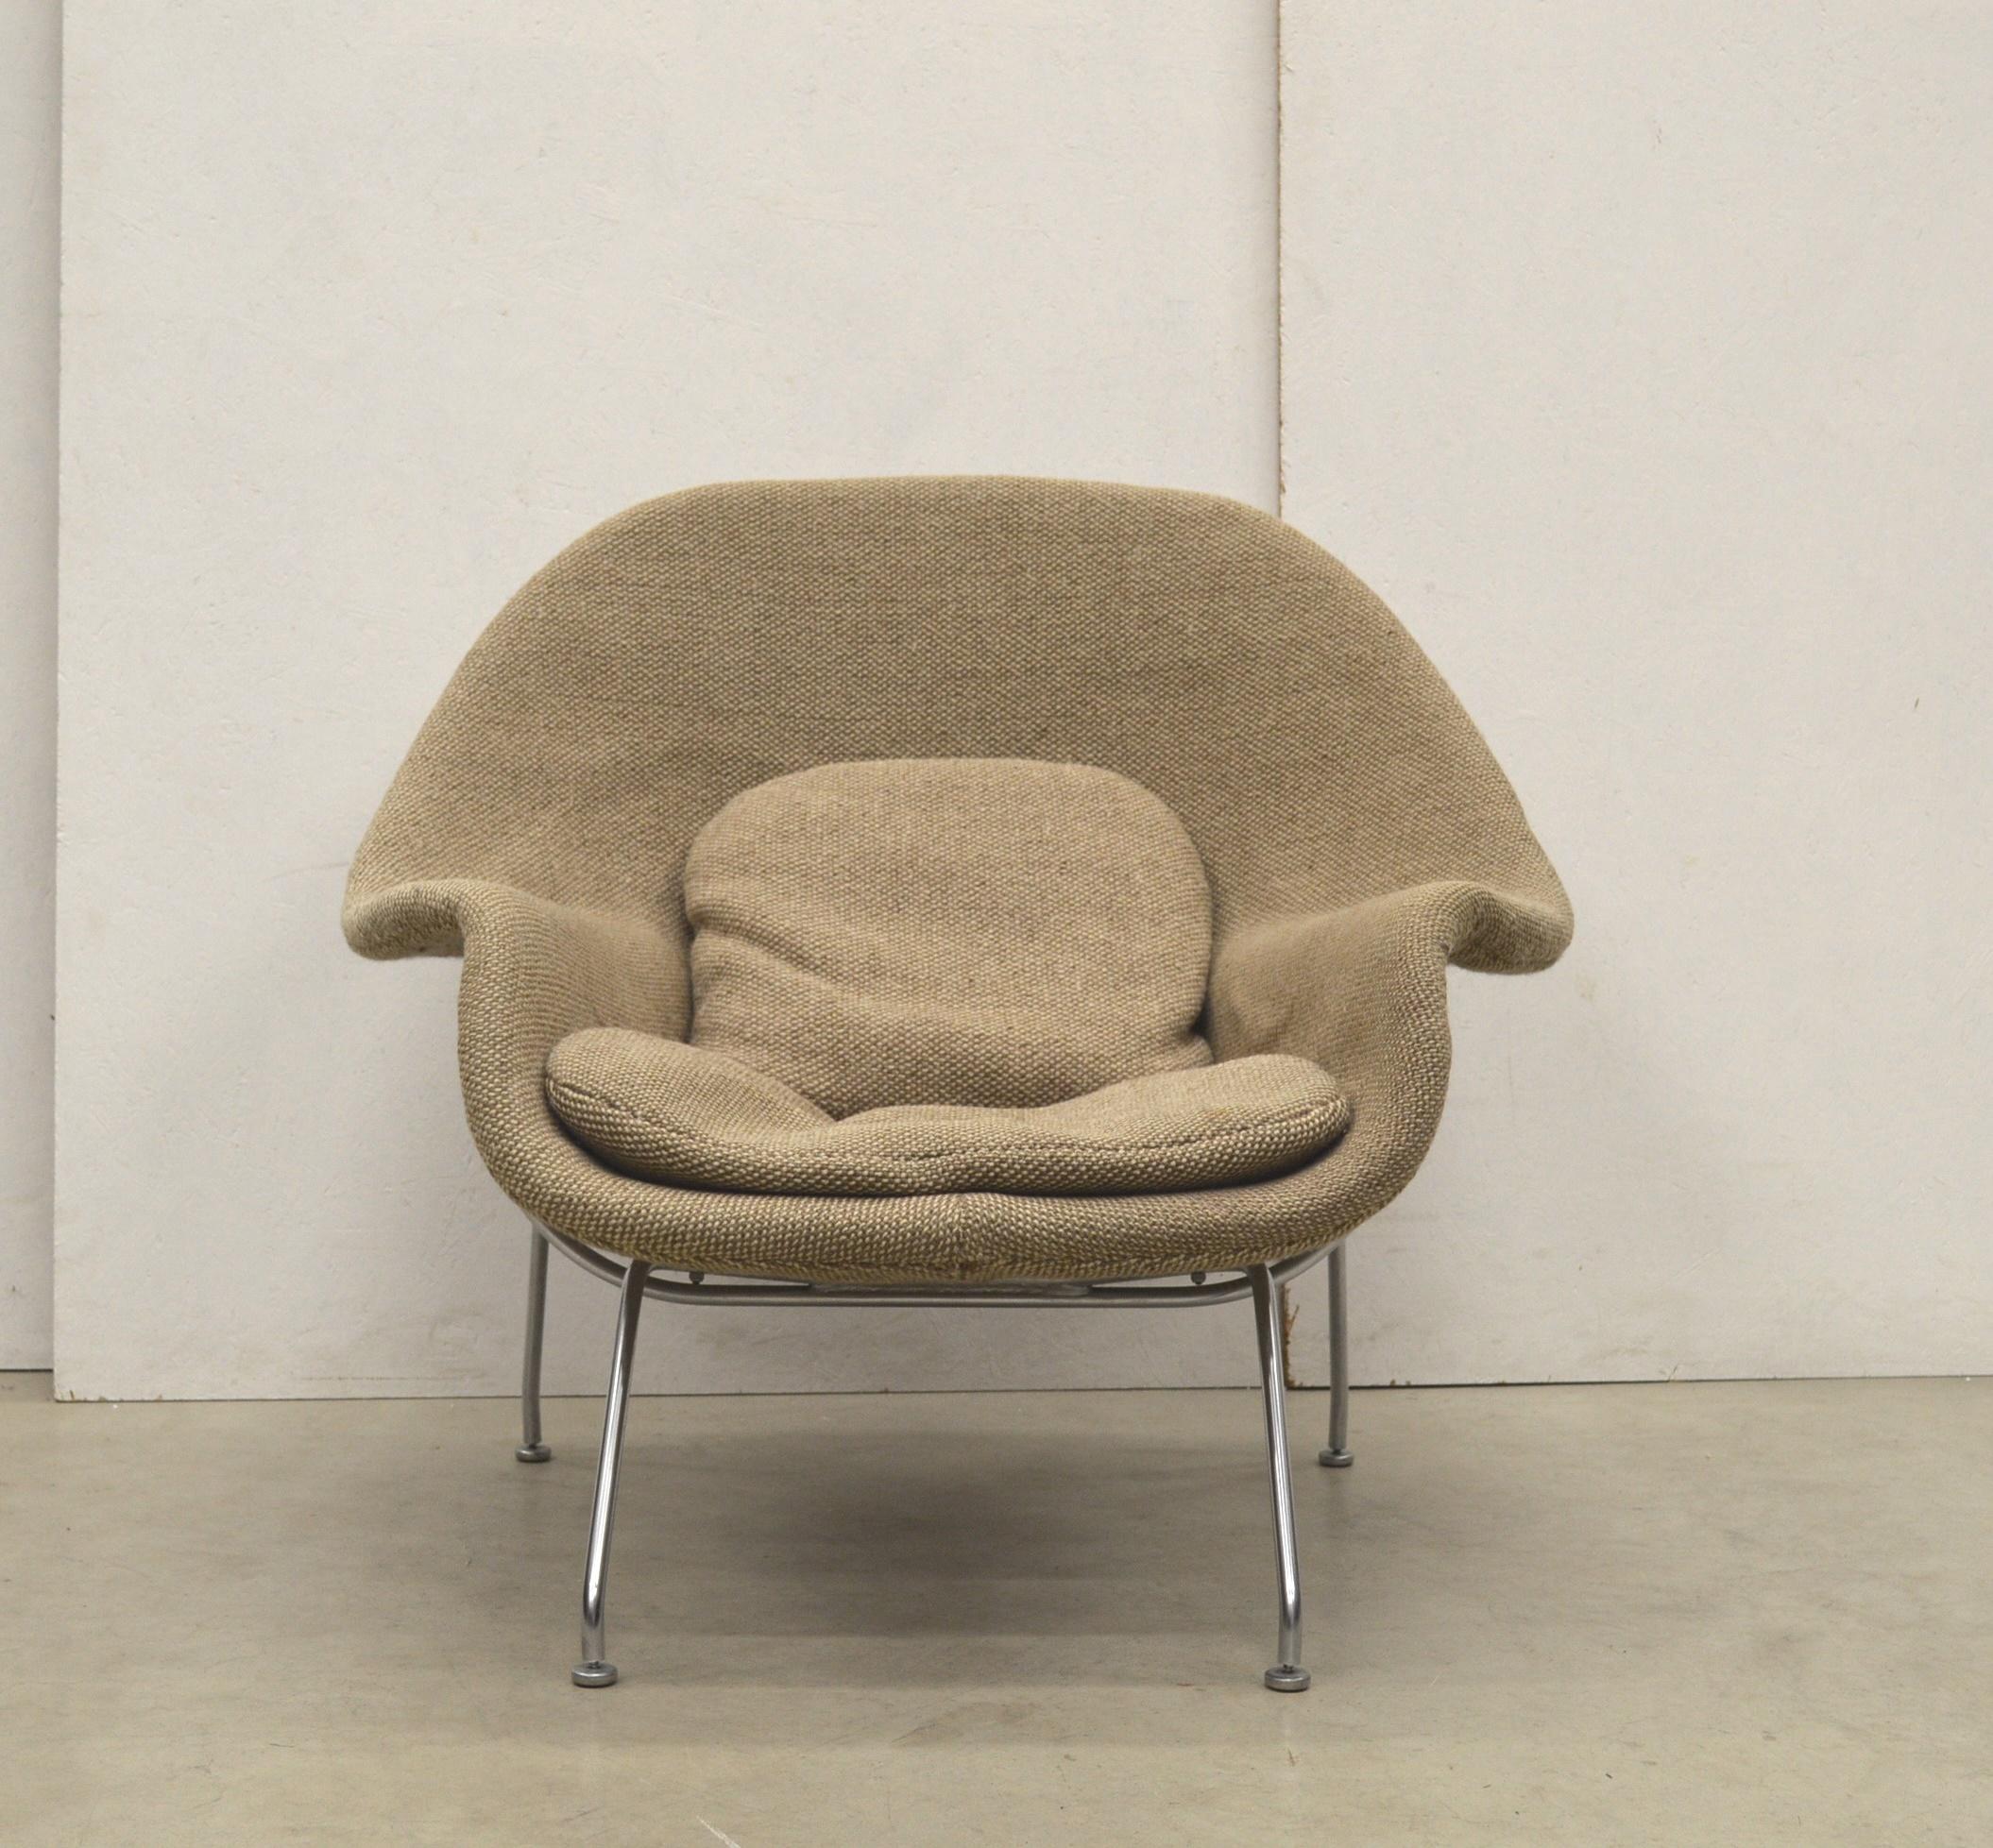 Früher 2-farbiger Wollstuhl Womb von Eero Saarinen für Knoll. 

Der bahnbrechende Womb Chair wurde 1948 von Eero Saarinen auf Wunsch von Florence Knoll entworfen, die sich einen Stuhl wünschte, der wie ein Korb voller Kissen war - etwas, in dem